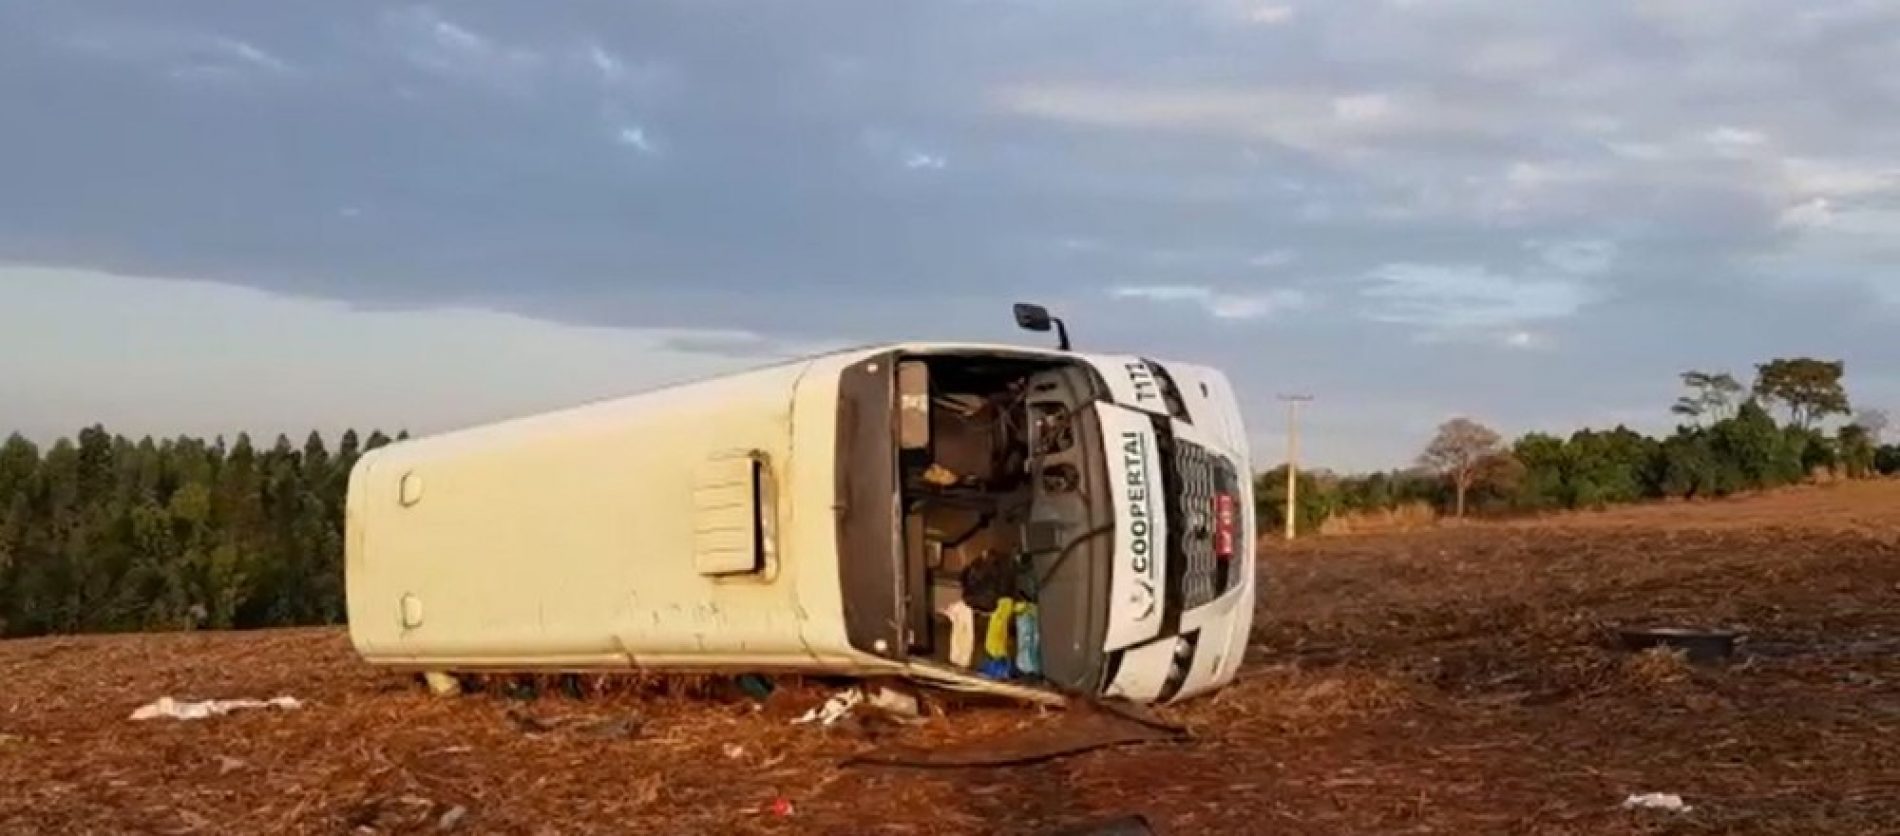 REGIÃO: Motorista foge após capotagem com um morto e seis feridos em Restinga